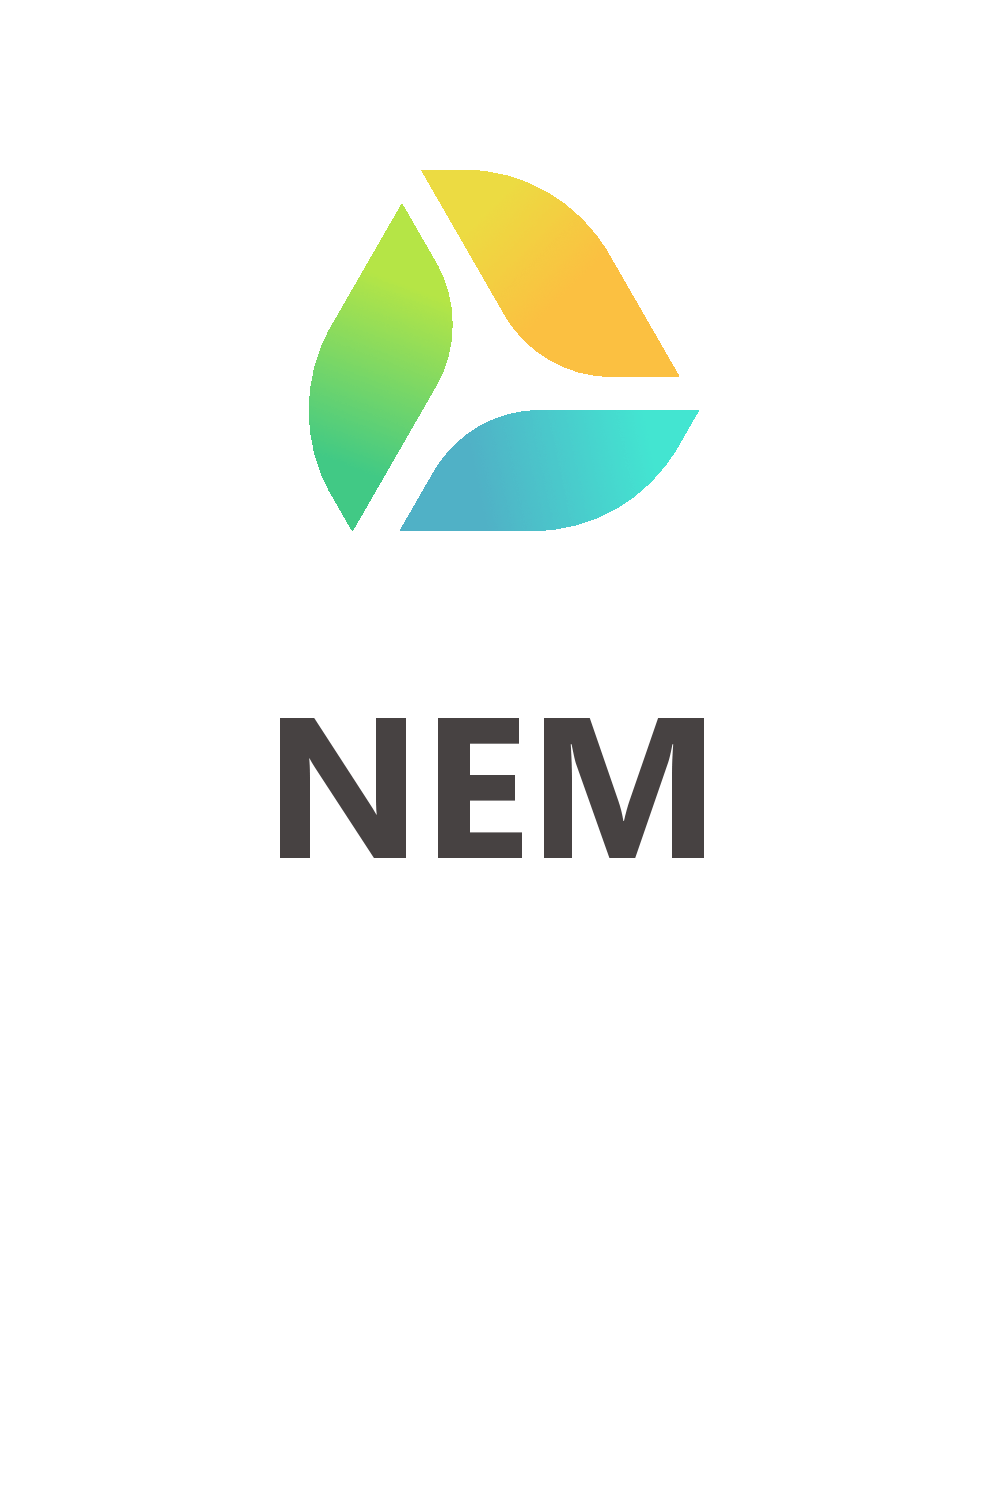 Nem Logo - Another NEM logo